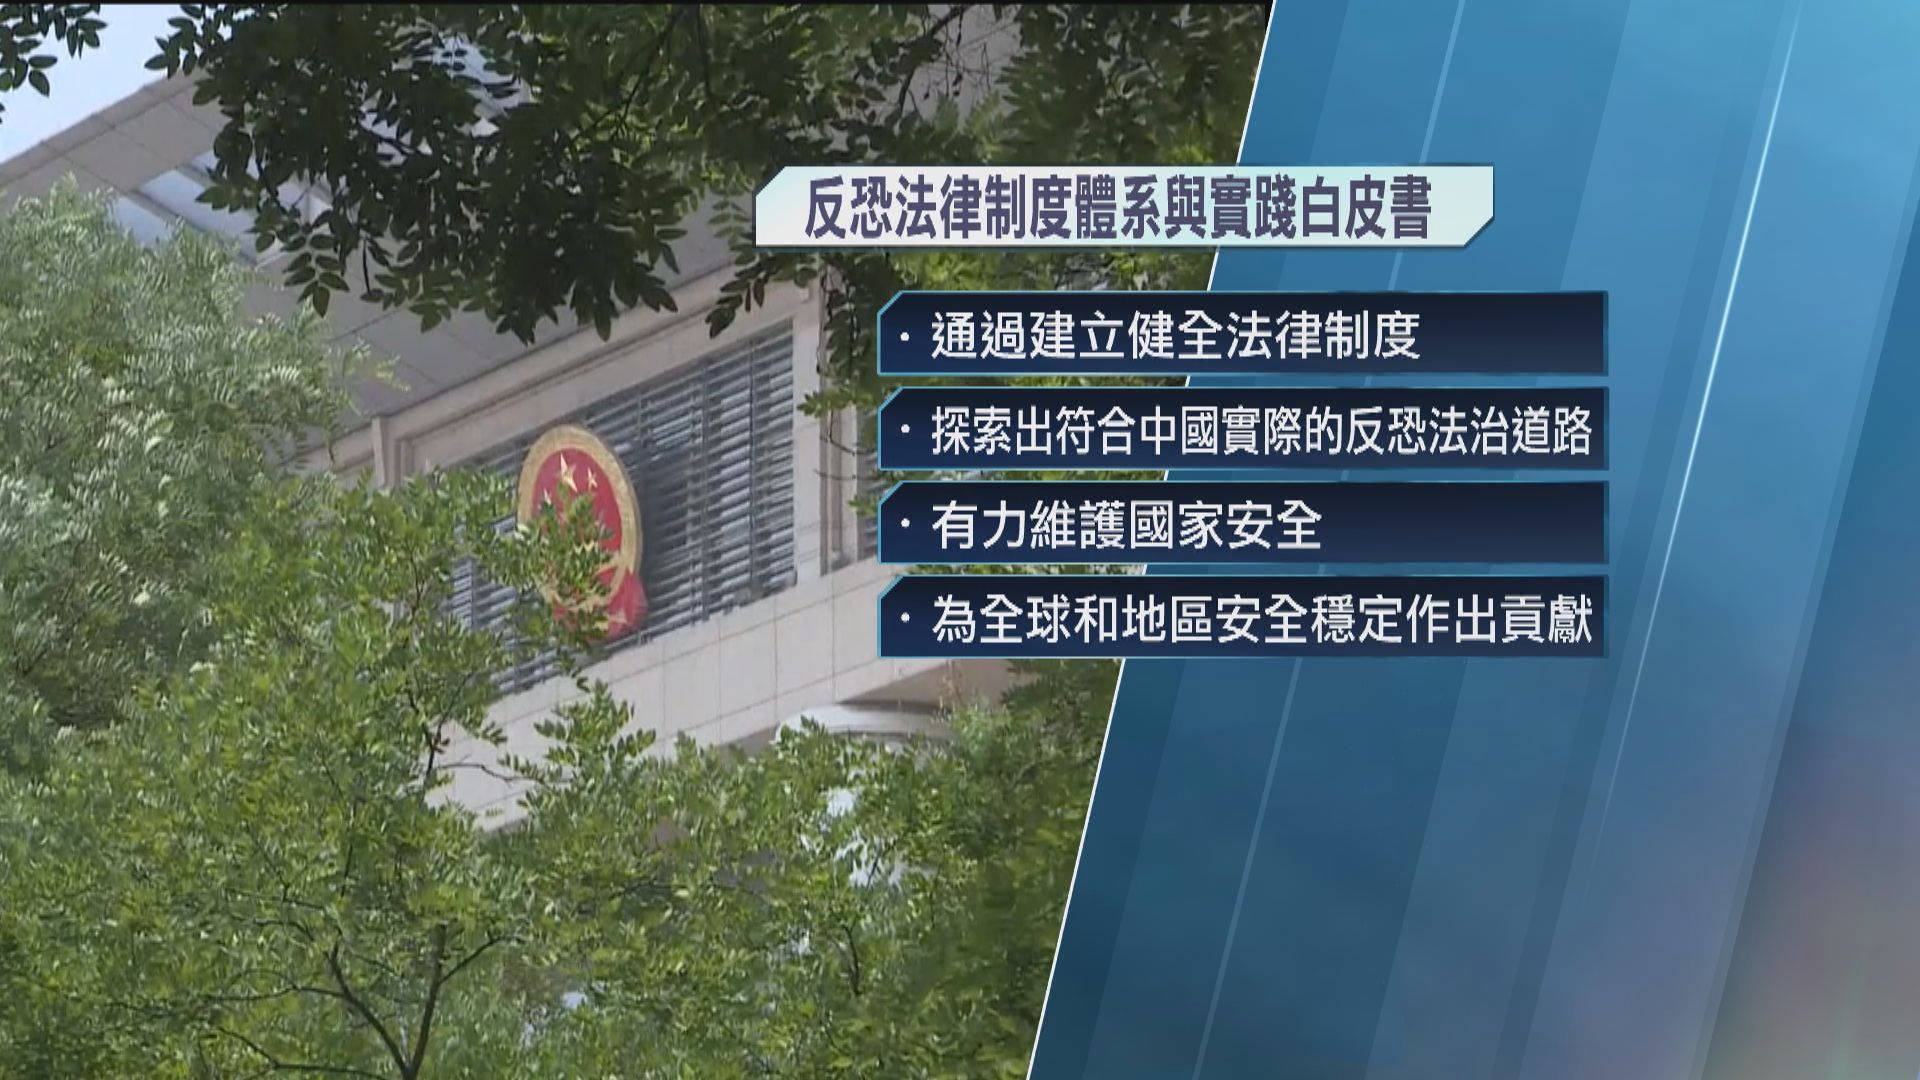 國務院發布《中國的反恐怖主義法律制度體系與實踐》白皮書